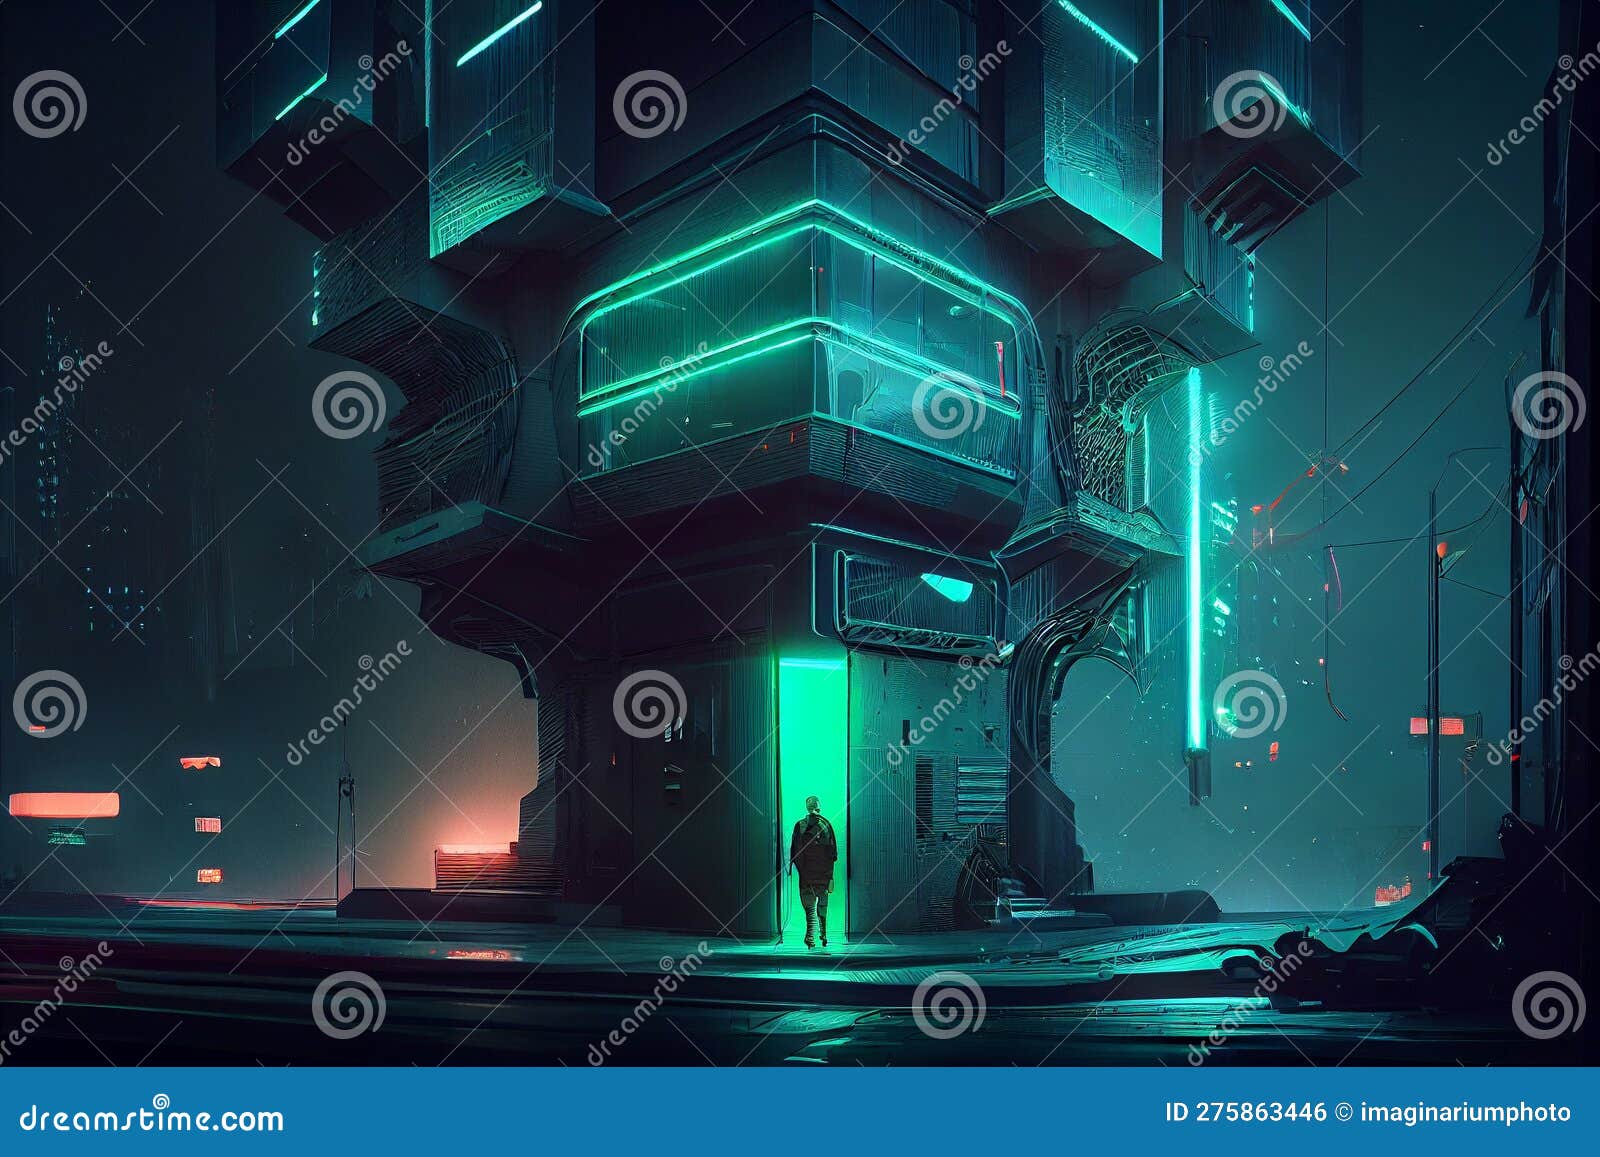 Cyberpunk industrial abstract future wallpaper conceito futurista